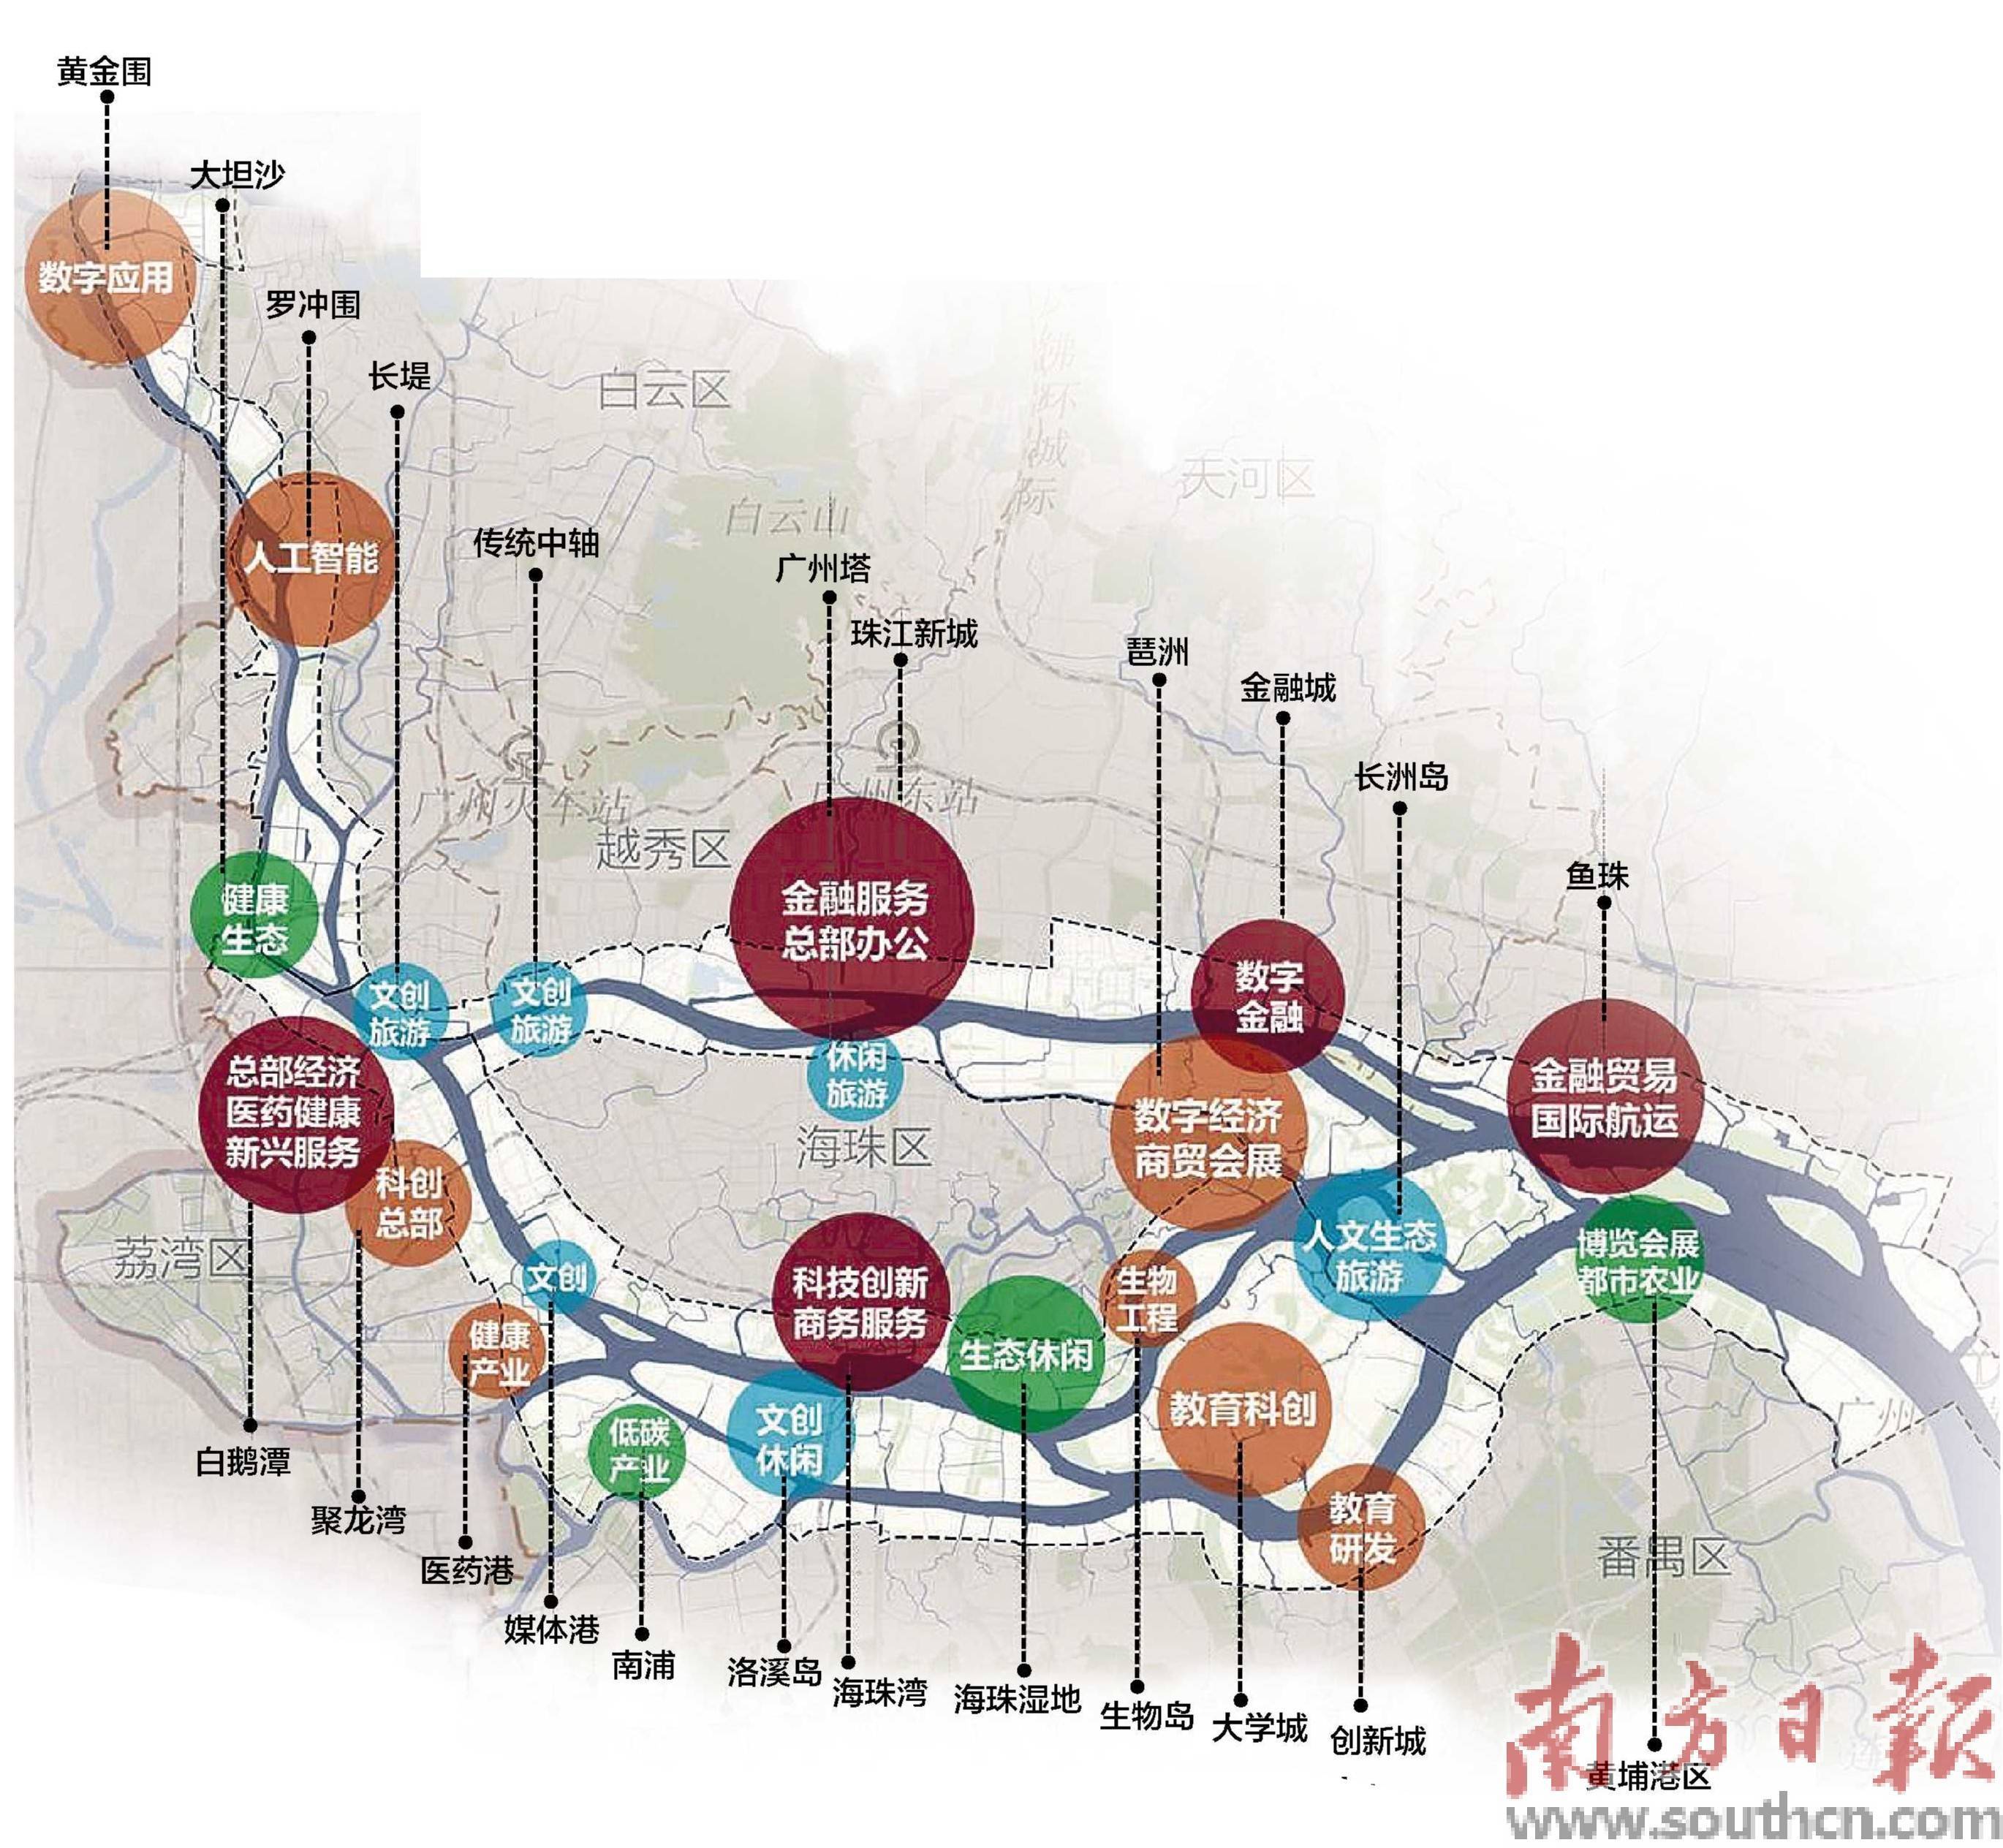 珠江沿岸产业发展路线图公布_手机搜狐网